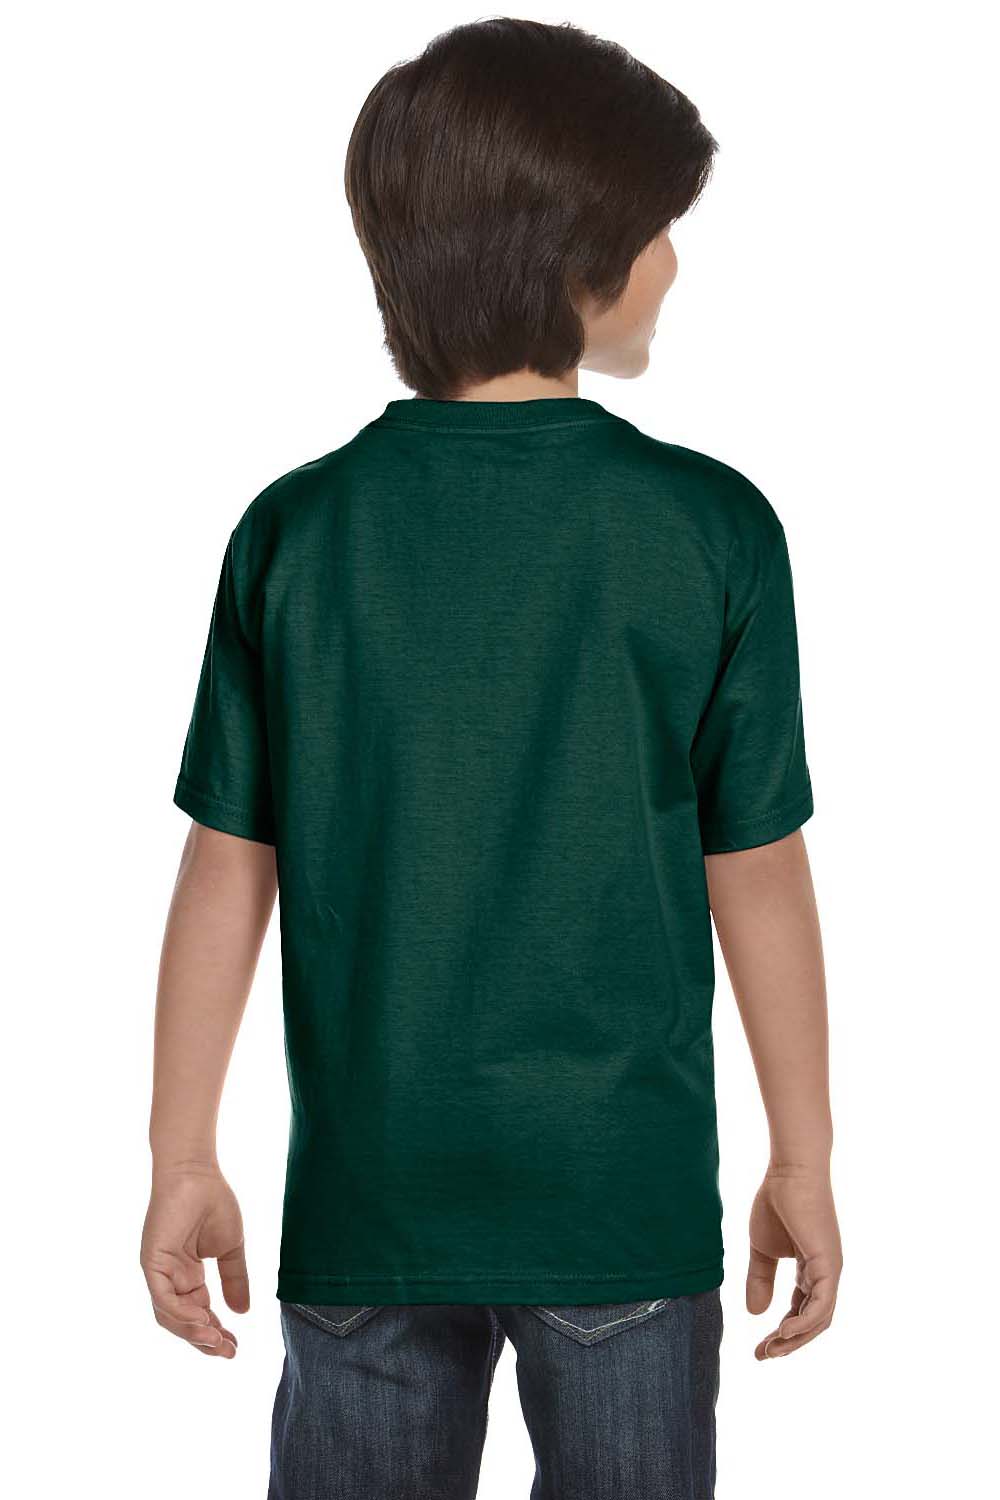 Gildan G800B Youth DryBlend Moisture Wicking Short Sleeve Crewneck T-Shirt Forest Green Back